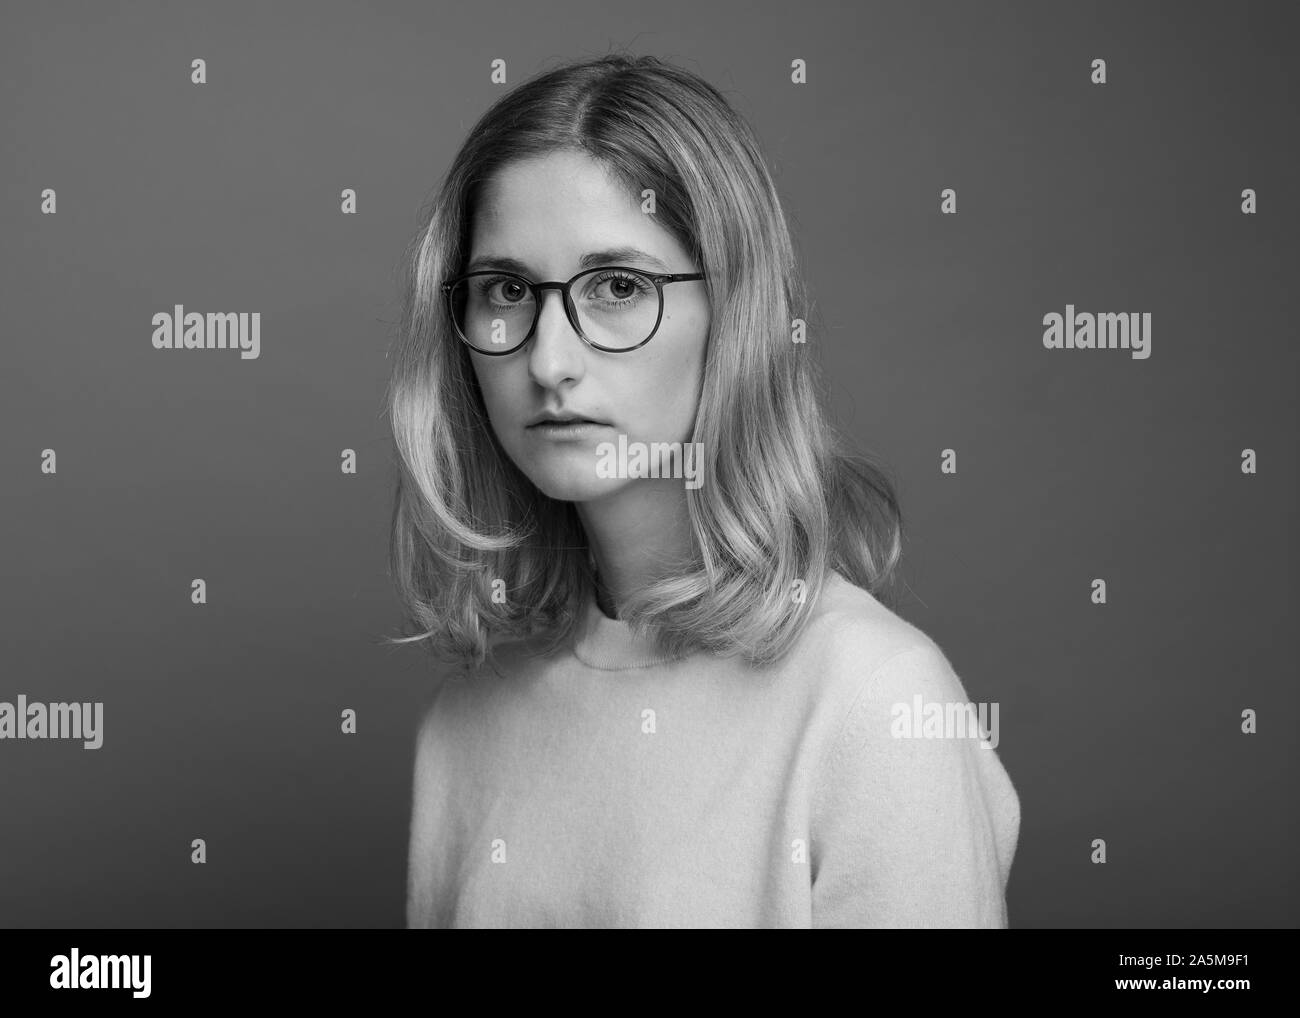 Imagen en blanco y negro de mujer con gafas Foto de stock